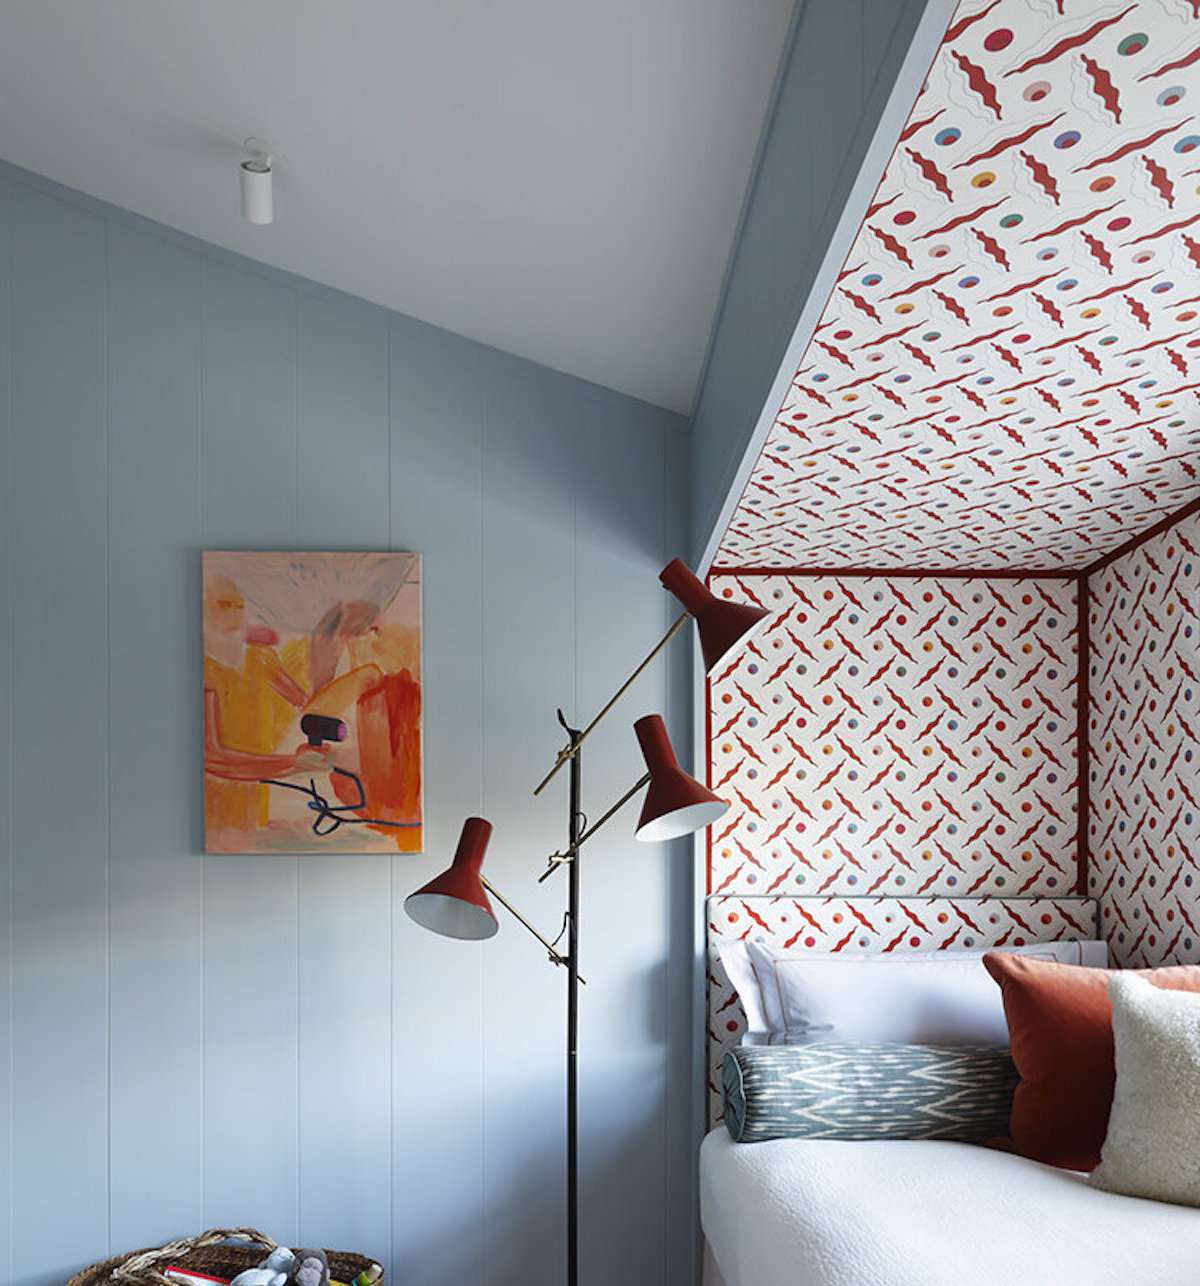 dormitorio con paredes azul pálido, estampado rojo y blanco en rincón que contiene una cama, moderna lámpara roja